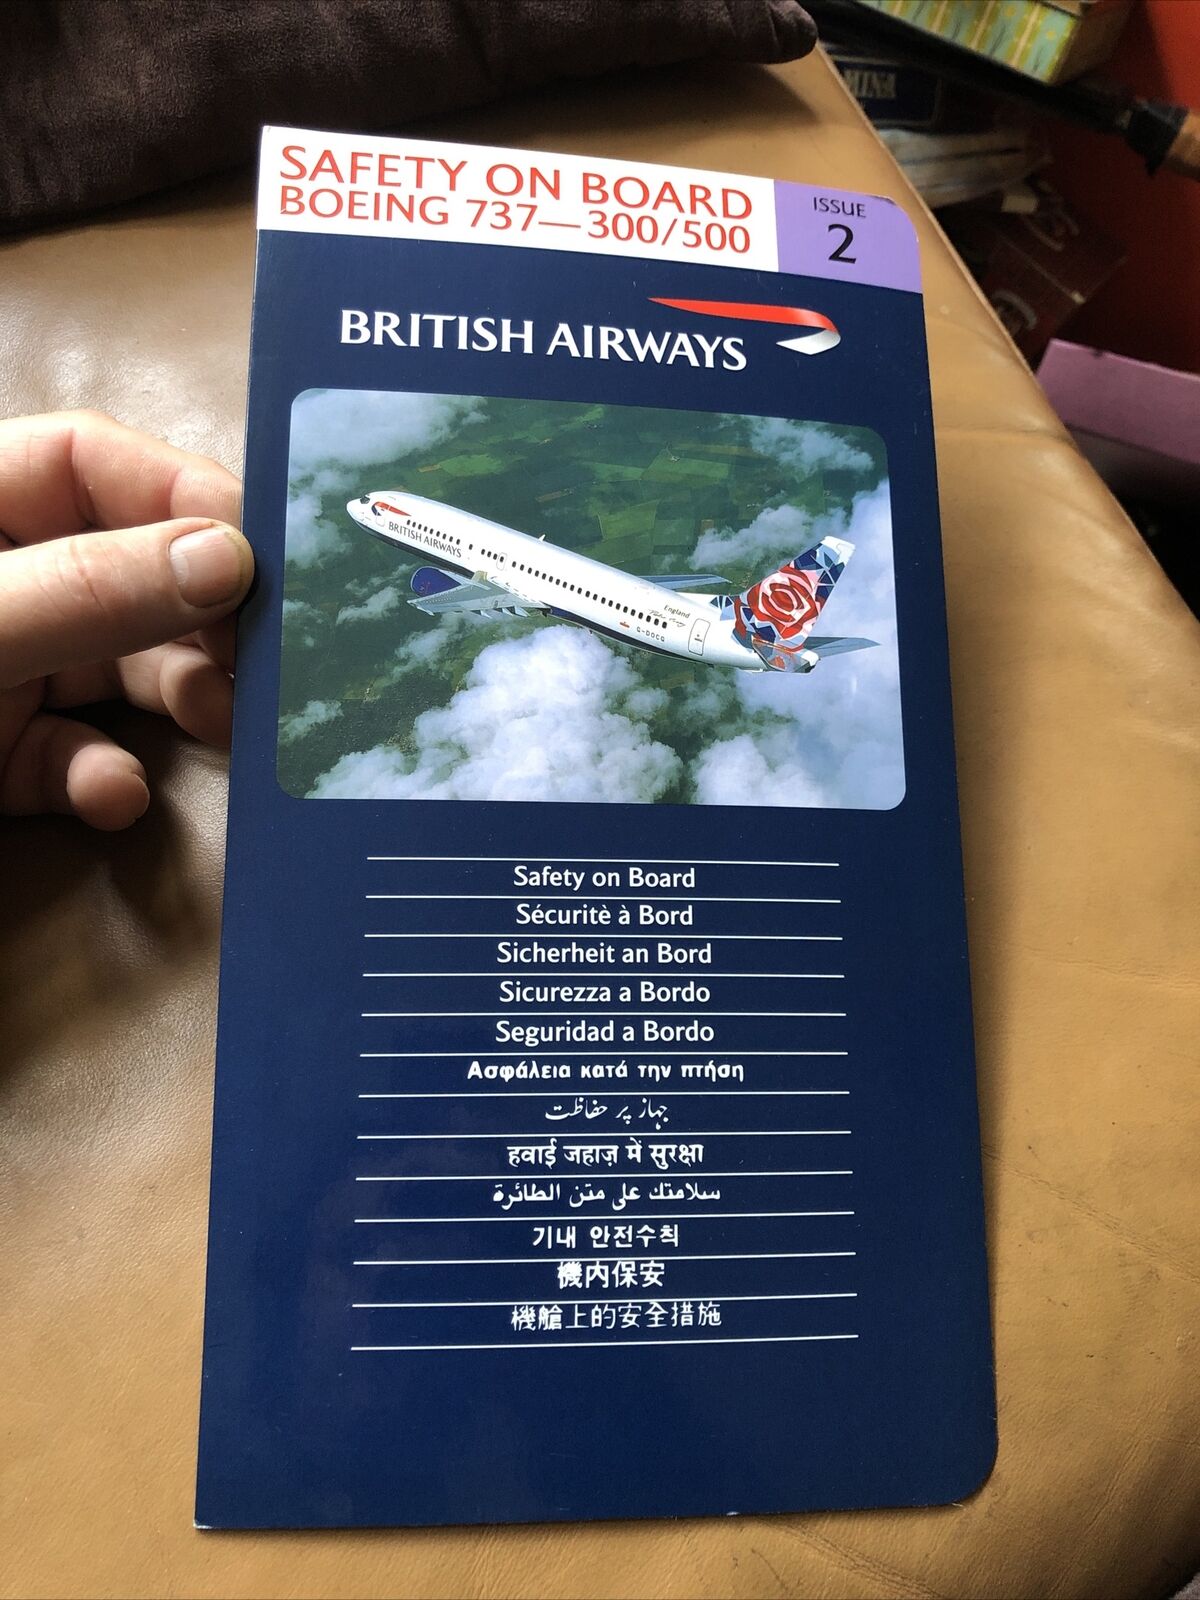 Bin B A BRITISH AIRWAYS SAFETY ON BOARD BOEING 737-300/500 ISSUE 2